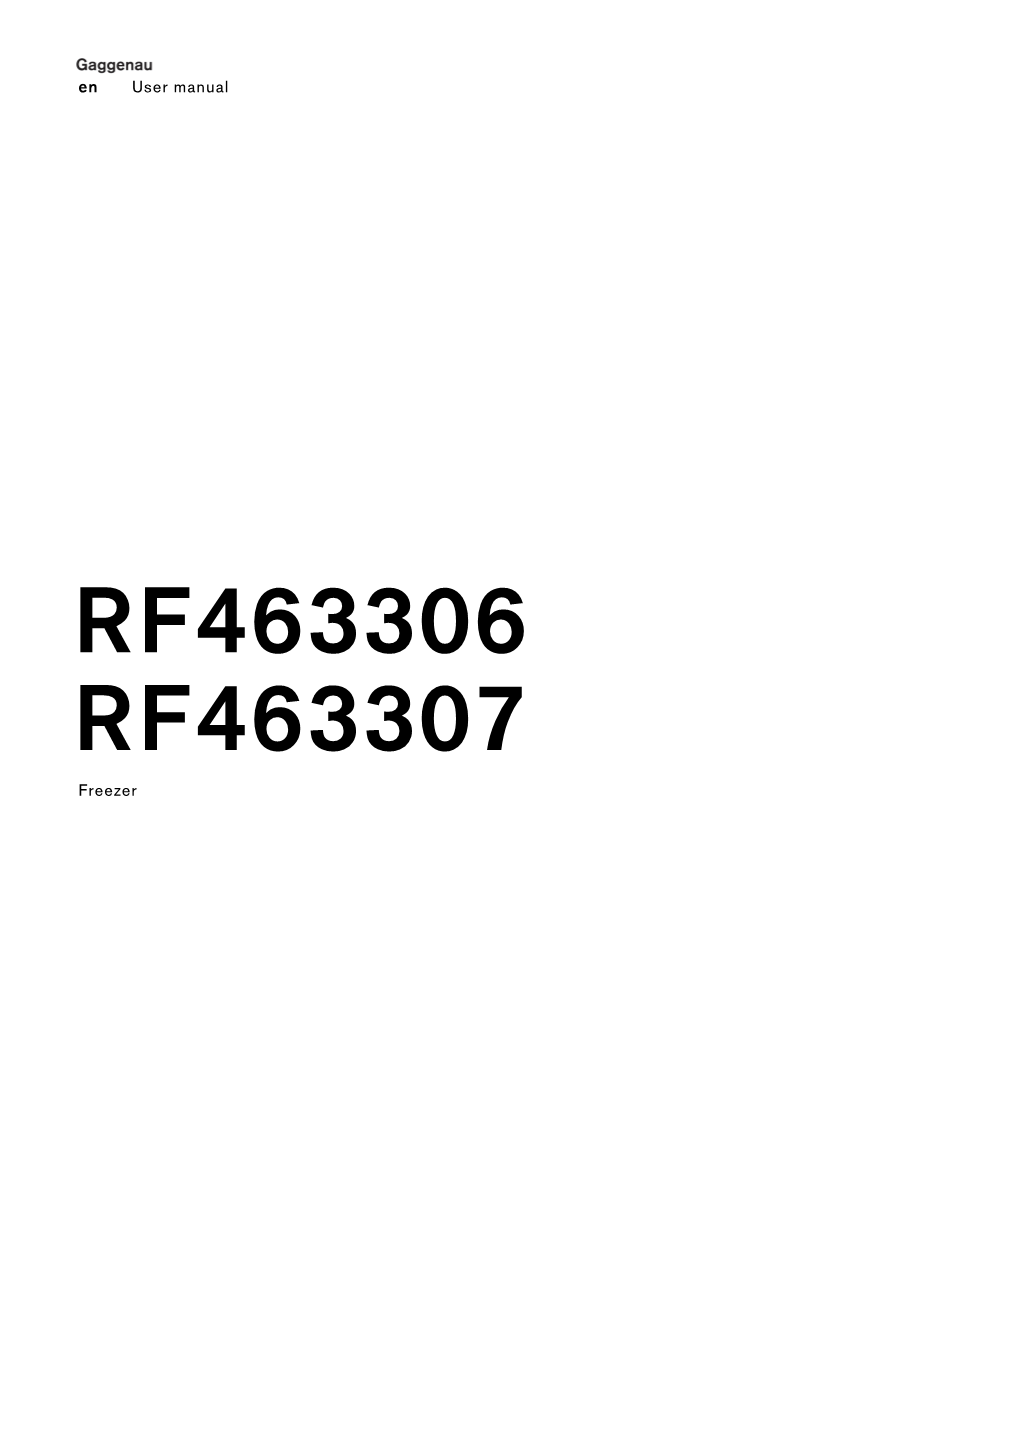 RF463306 RF463307 Freezer En En Table of Contents